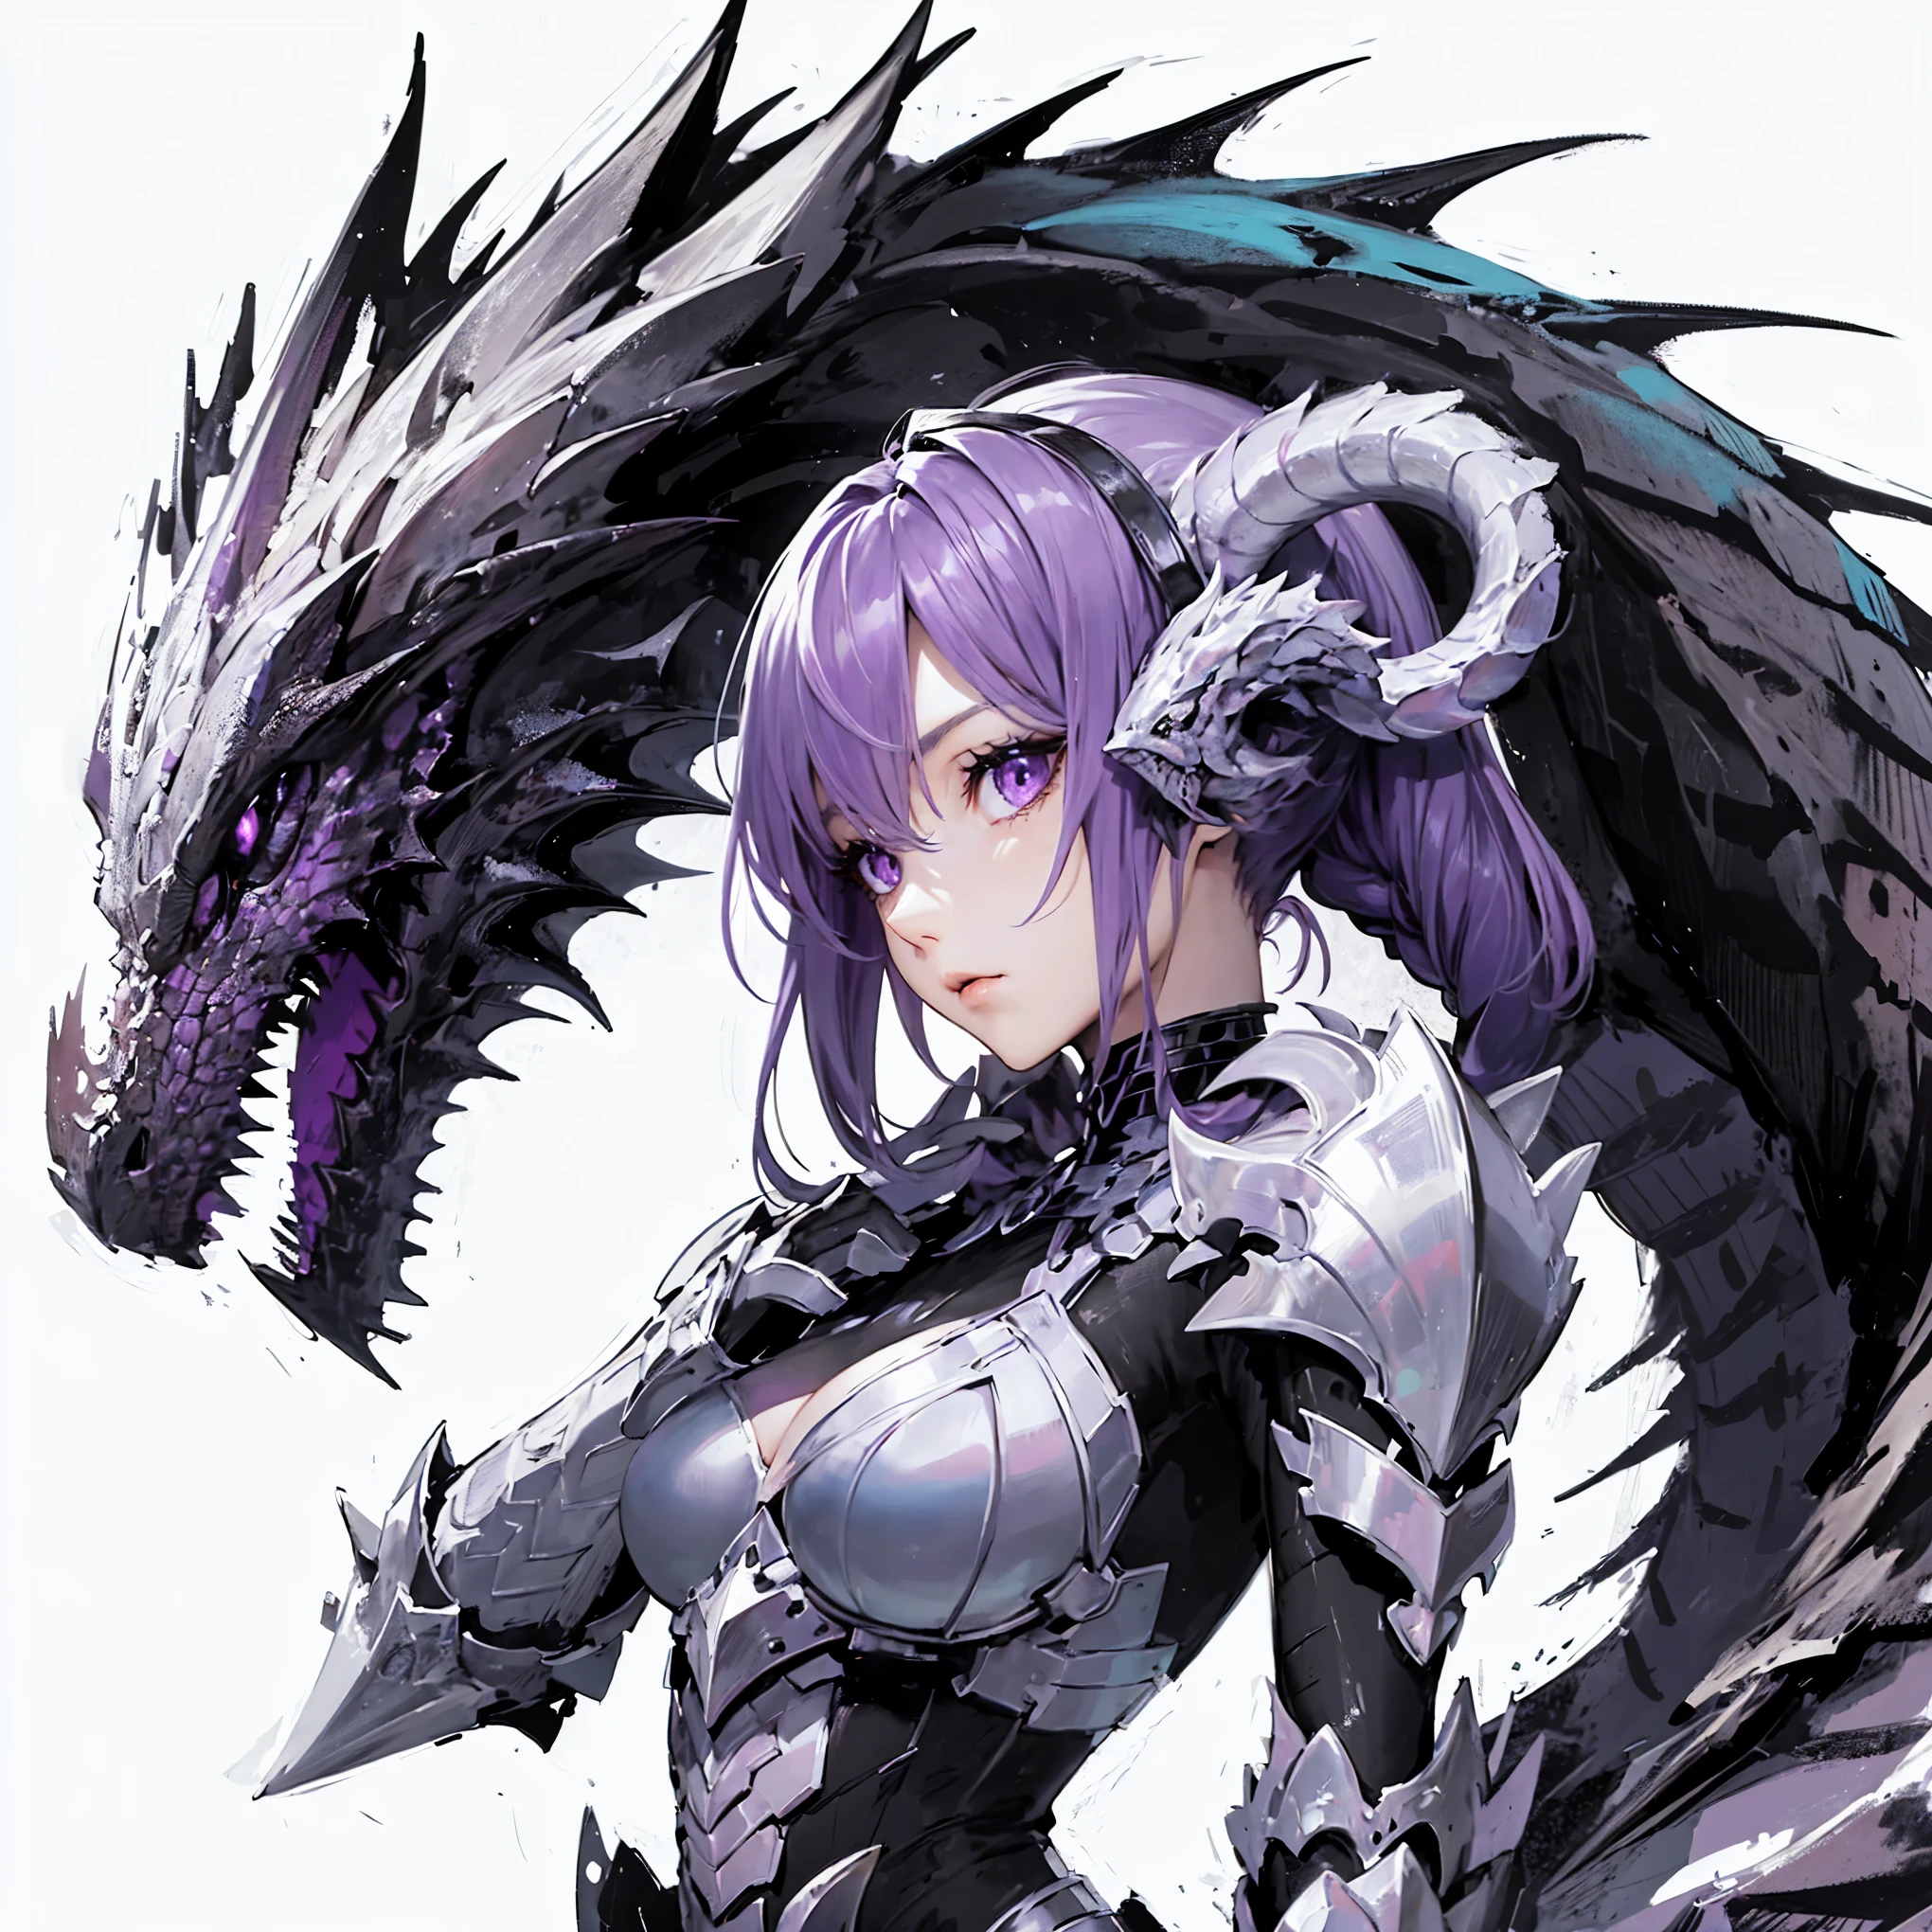 ドラゴンと融合した少女. イメージカラーは黒です. 紫色の髪. ビキニアーマー. 彼女の肩から竜の首. うろこ状の鎧.